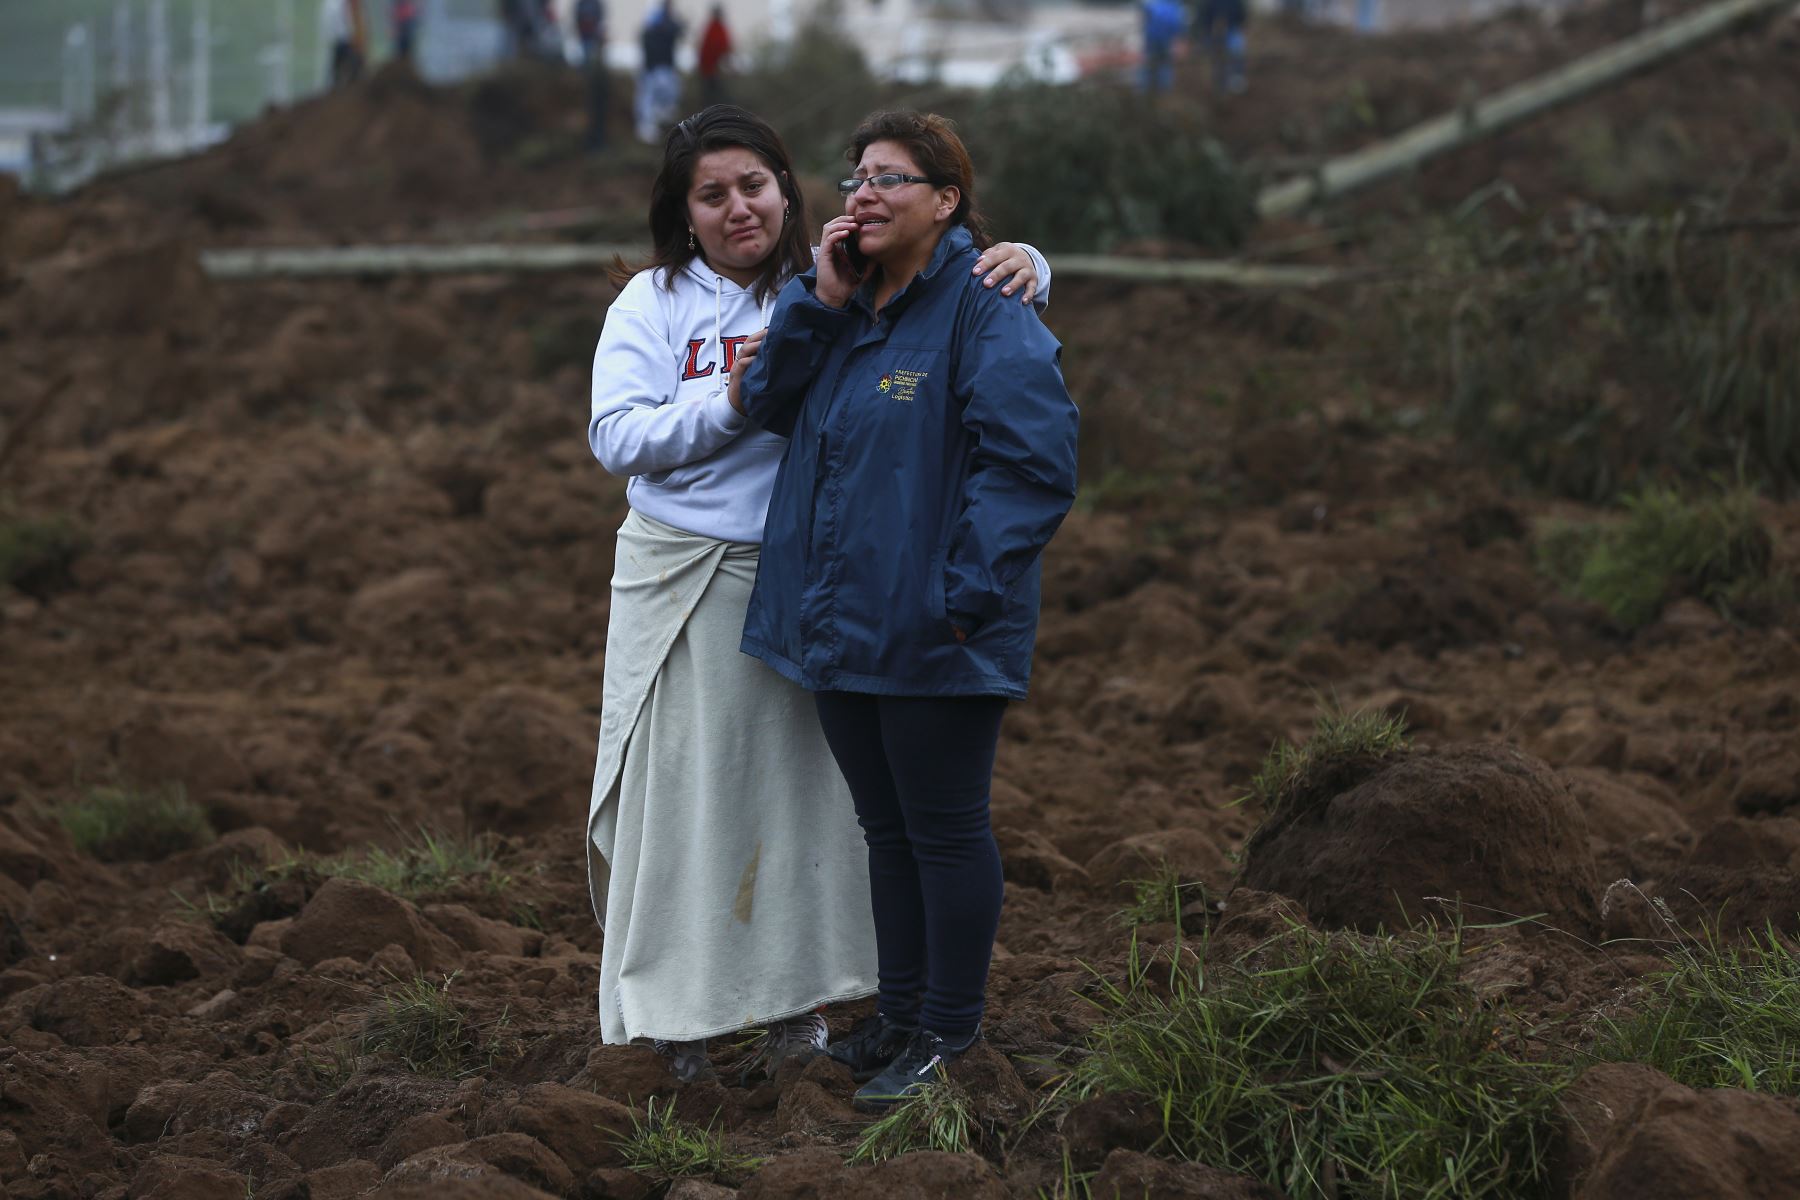 Familiares se lamentan en la zona donde se presentó un deslizamiento de tierra, en Alausí,Ecuador. Al menos 7 personas han muerto y otras 46 siguen desaparecidas tras un deslizamiento de tierra en el sur de Ecuador causado por meses de fuertes lluvias.
Foto: EFE